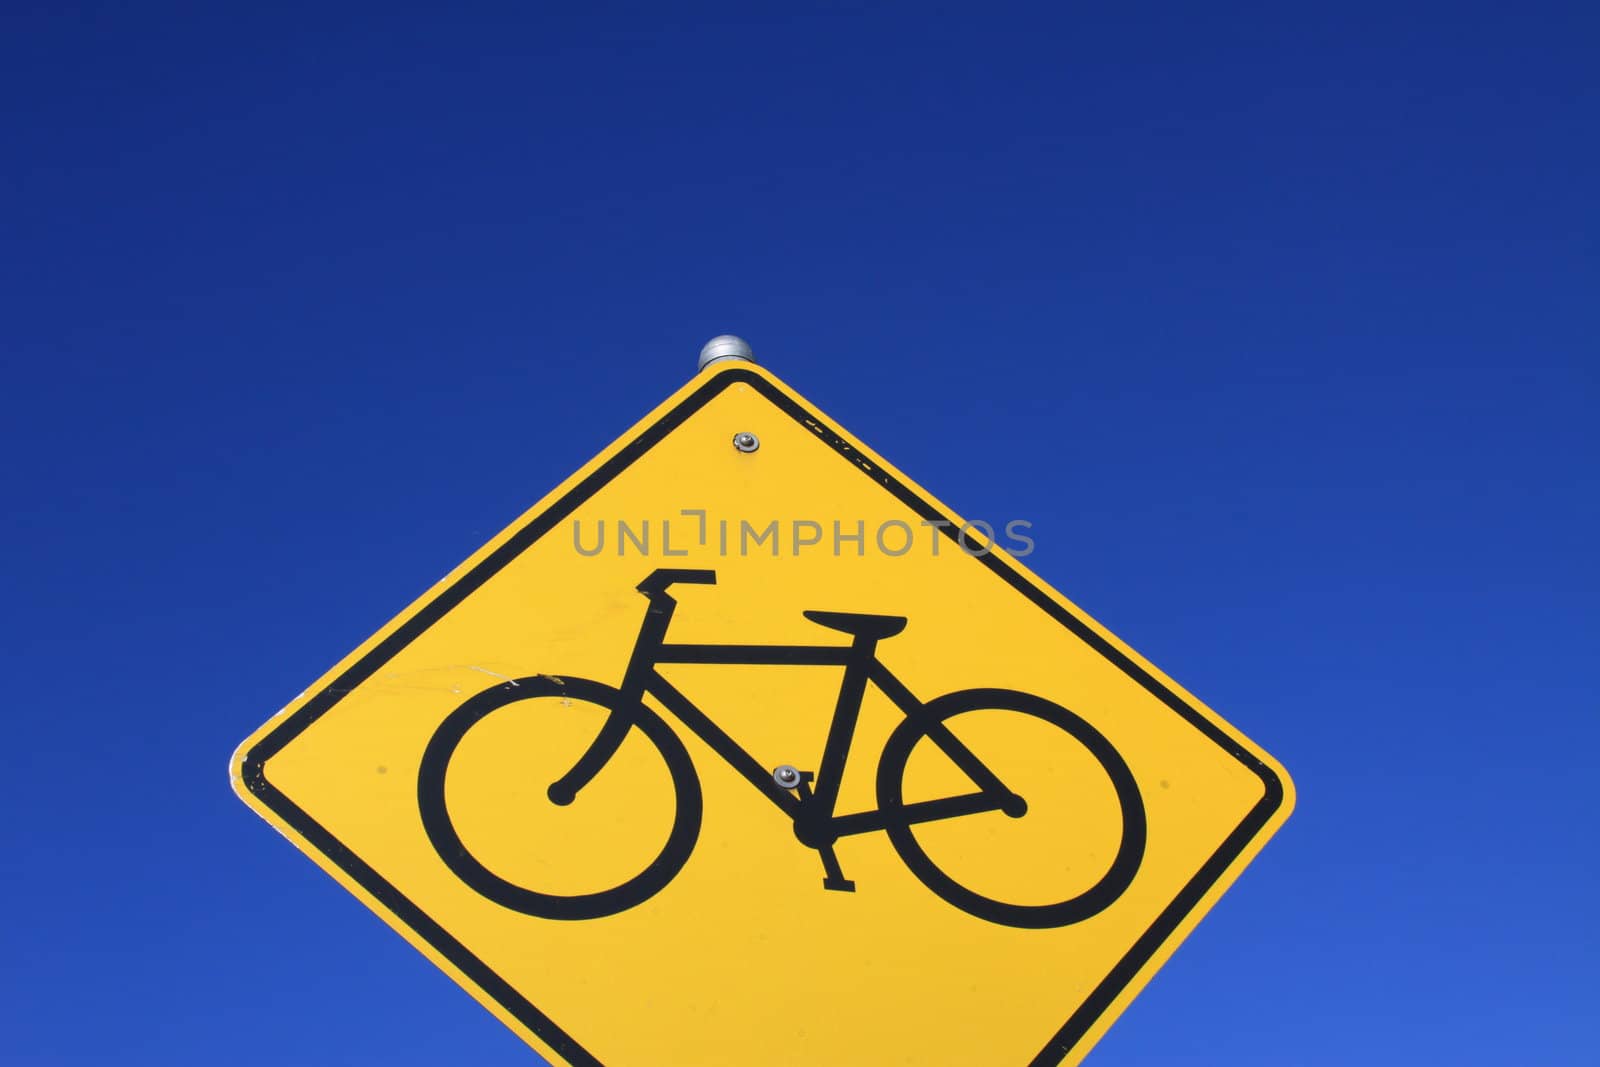 Bike lane road sign over blue sky.